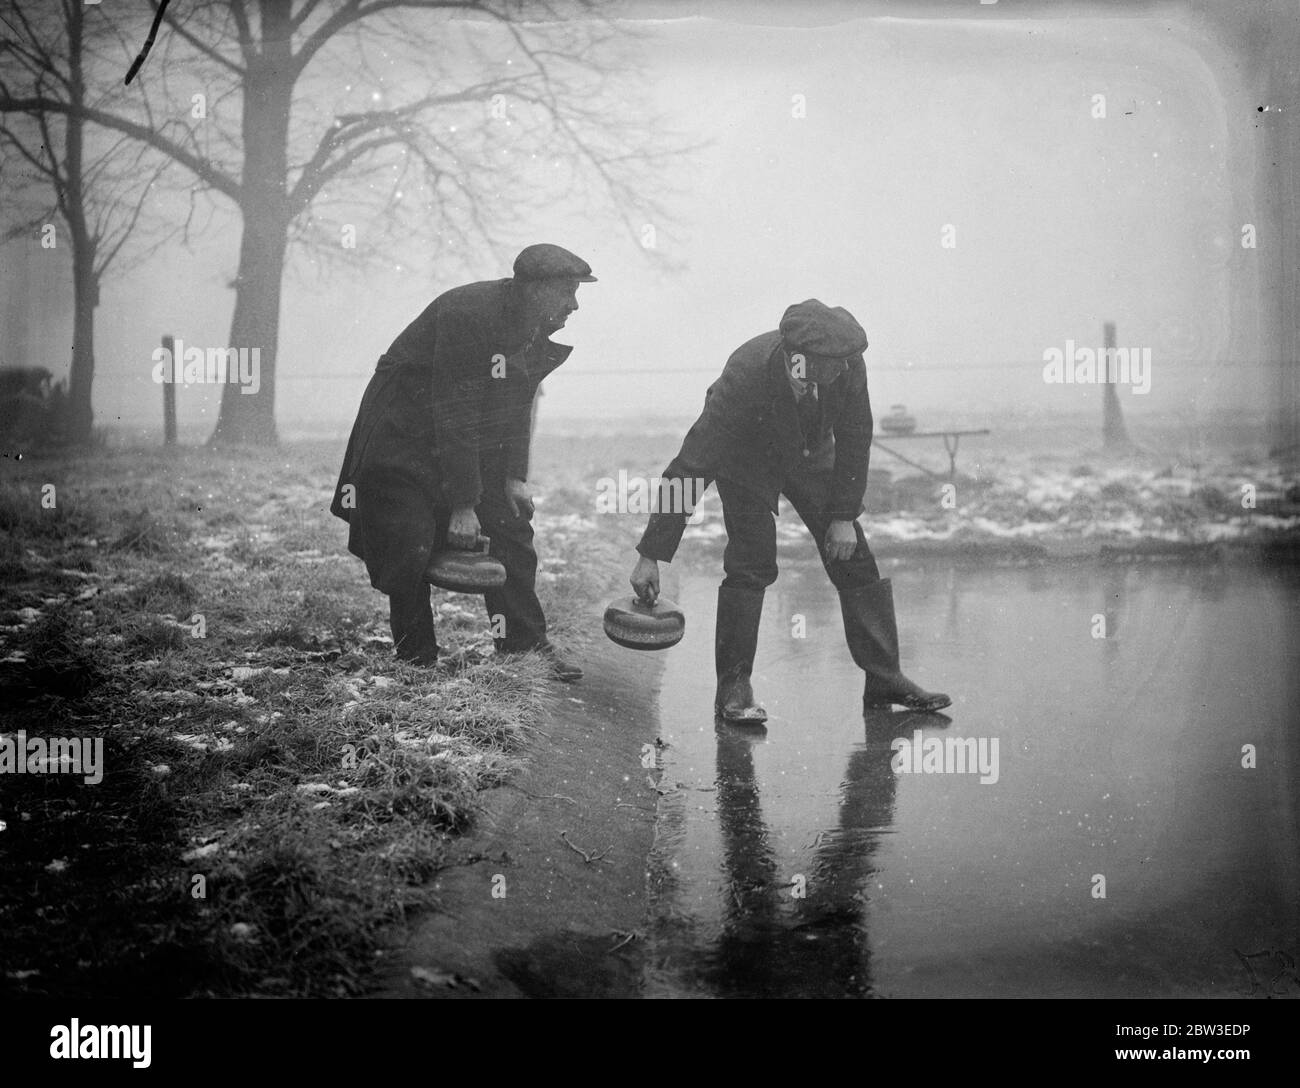 Cold Snap apporte des perspectives de curling à Londres . Après la nuit la plus froide de l'année où 13 degrés de gel a été enregistré , les conservateurs se sont rassemblés de manière optimiste à Wombledon Common dans l'espoir que la patinoire il y aurait une coatine de glace assez épaisse pour permettre le jeu . Photos , essais des pierres de curling pour l'action à Wimbleon Common . 29 janvier 1935 Banque D'Images